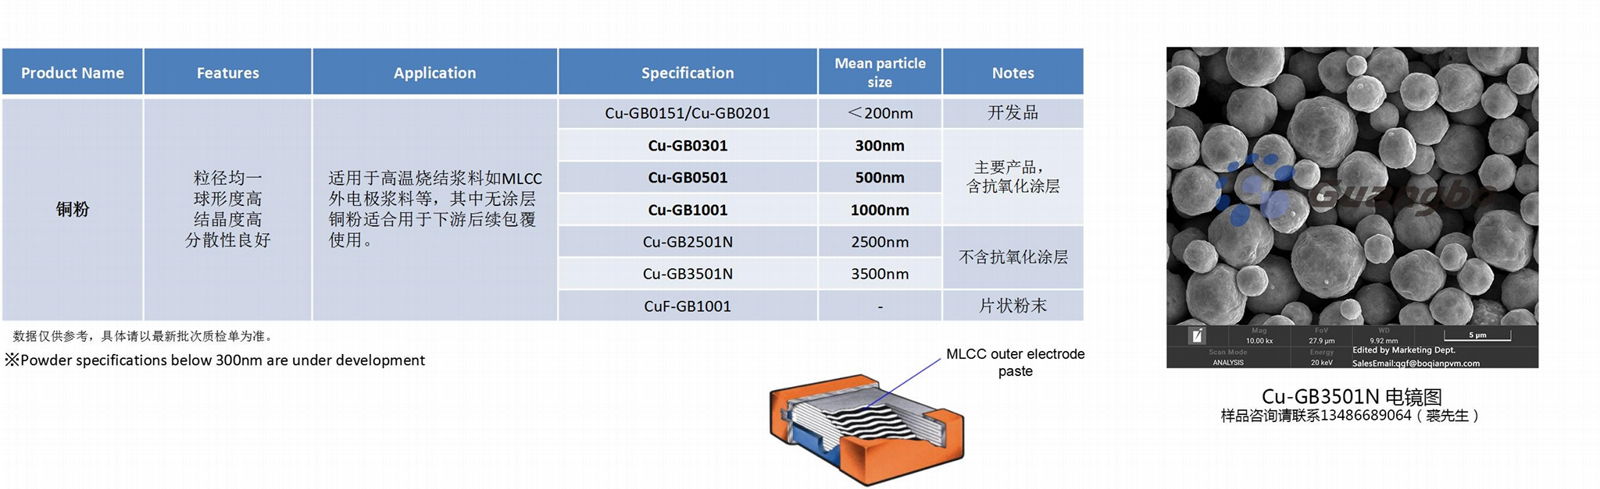 3.5微米球形铜粉Cu-GB3501N 用于银包覆或导电浆料 2